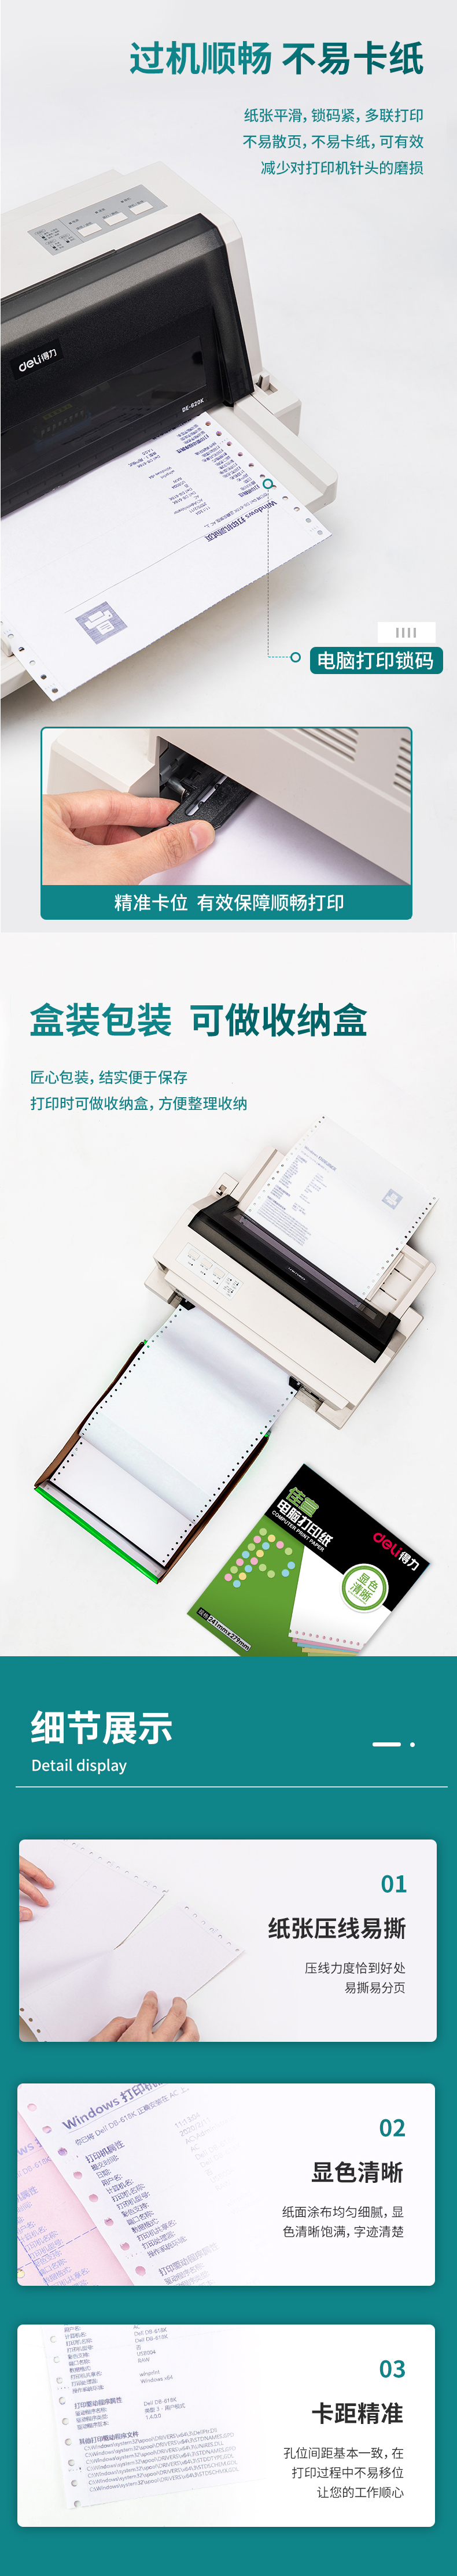 得力佳宣J241-1电脑打印纸(13白色不撕边)(盒)_04.jpg